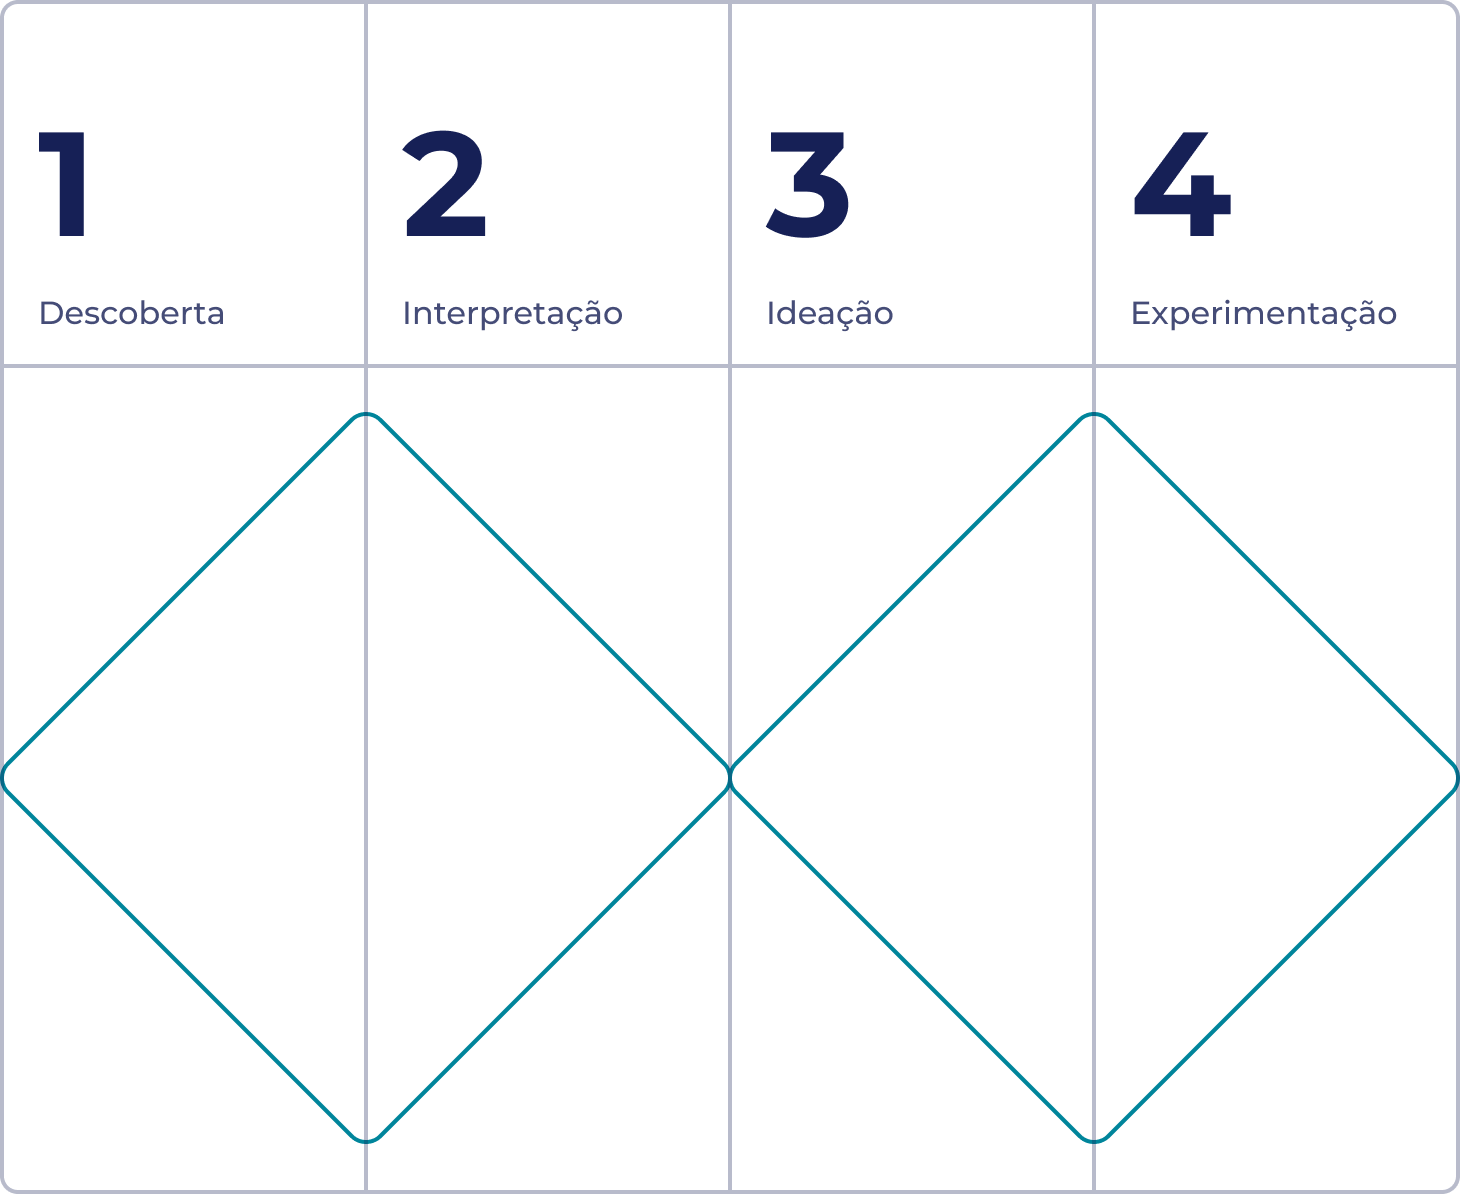 Diagrama com dois losangos dispostos lado a lado. Cada losango está dividido em duas partes, totalizando quarto partes e cada uma dessas partes representa uma etapa da metodologia Double Diamond: descoberta, interpretação, ideação e experimentação.